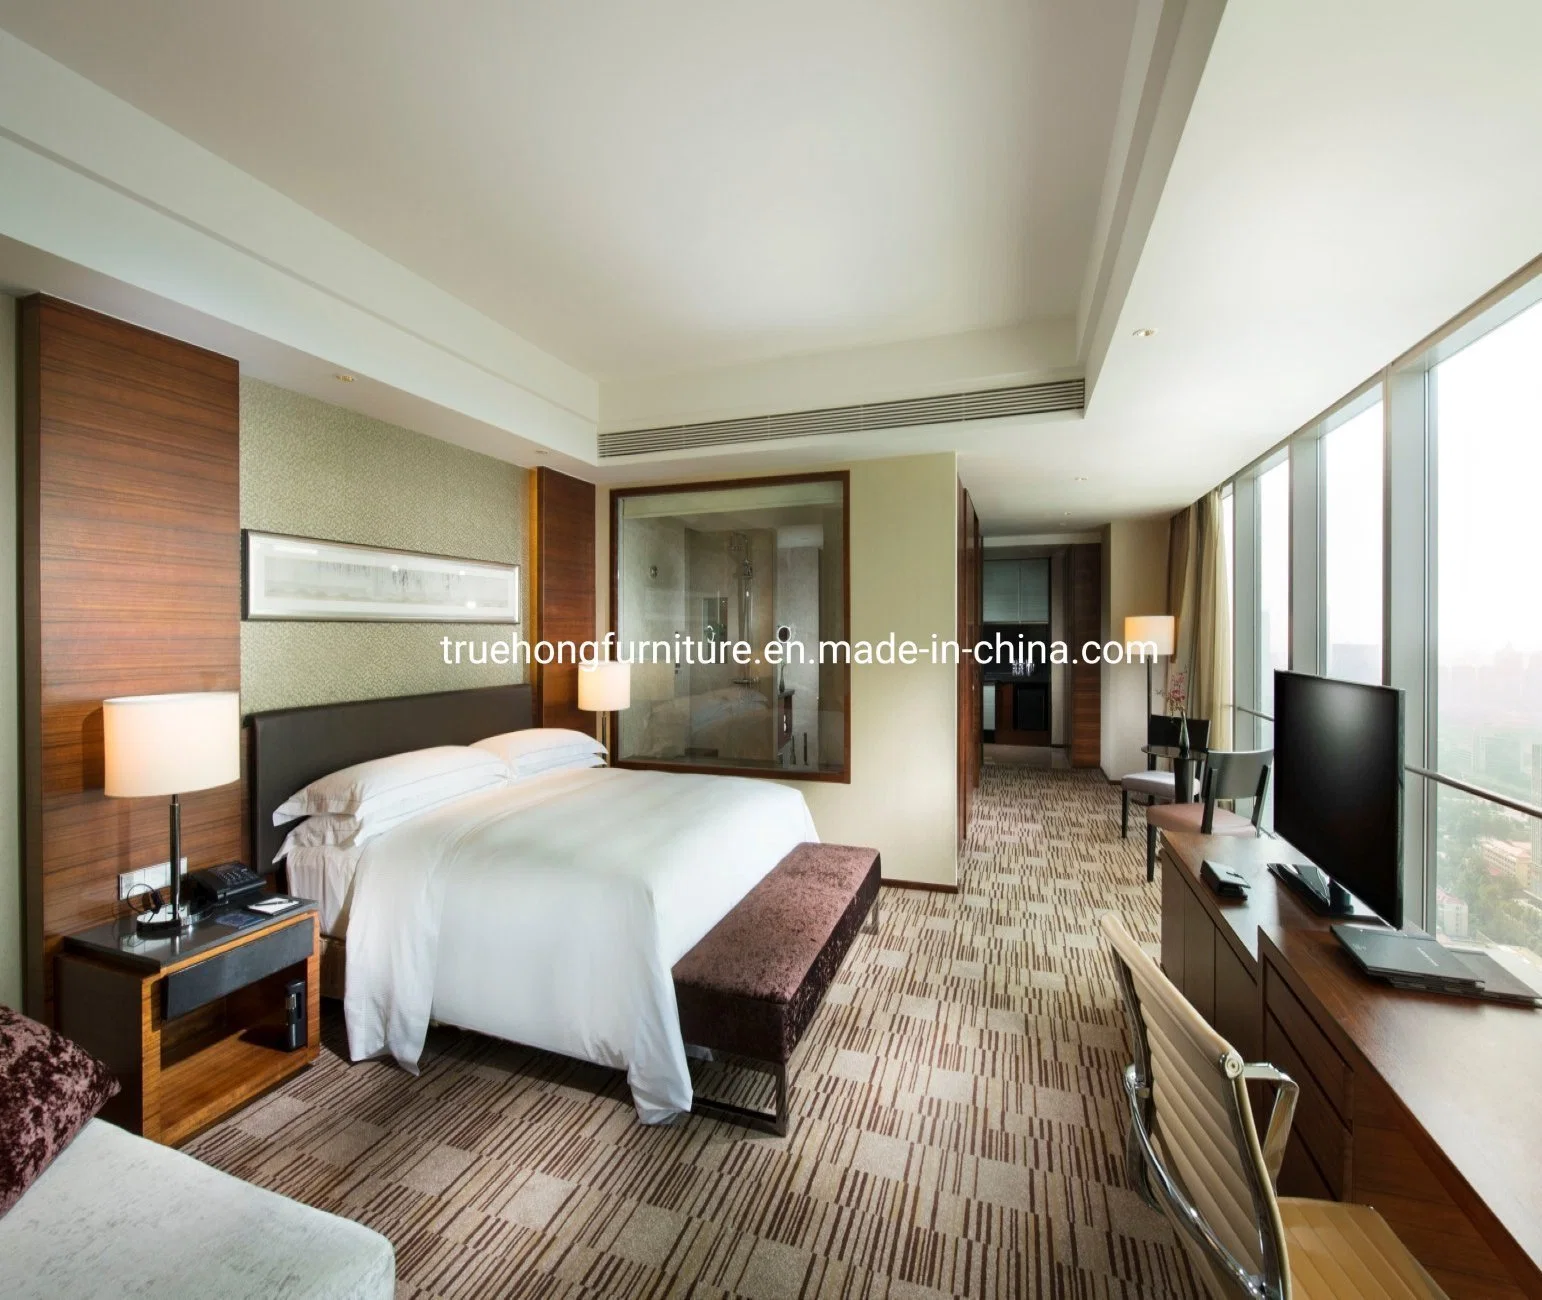 Diseño moderno Hotel de 5 estrellas Hotel en la fabricación de muebles de dormitorio establecido profesional